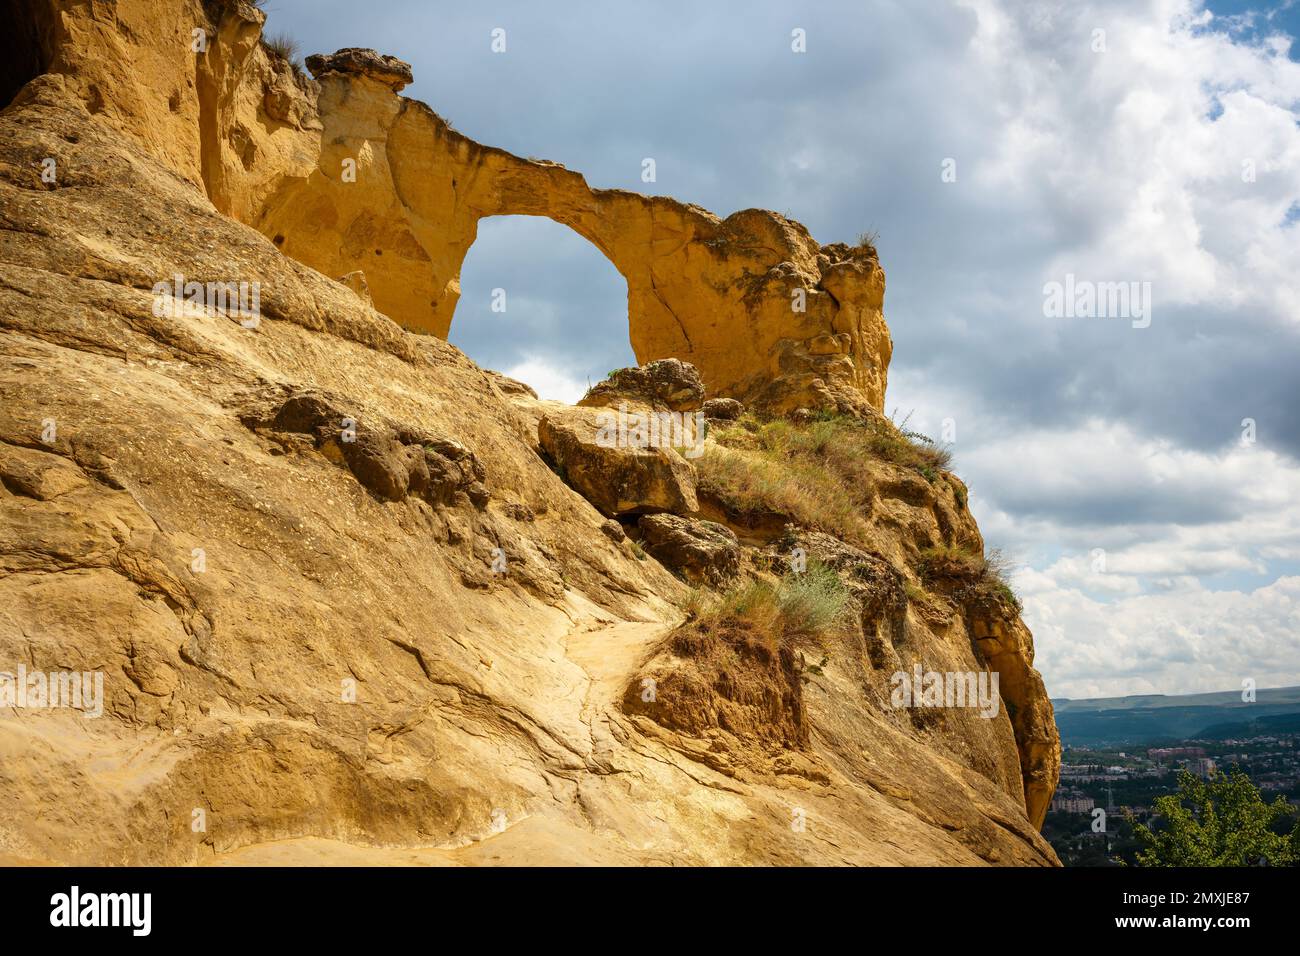 Anello di montagna a Kislovodsk, Stavropol Krai, Russia. Paesaggio con roccia, cielo e pietra a forma di finestra in estate, punto di riferimento di Kislovodsk. Tema della natura Foto Stock